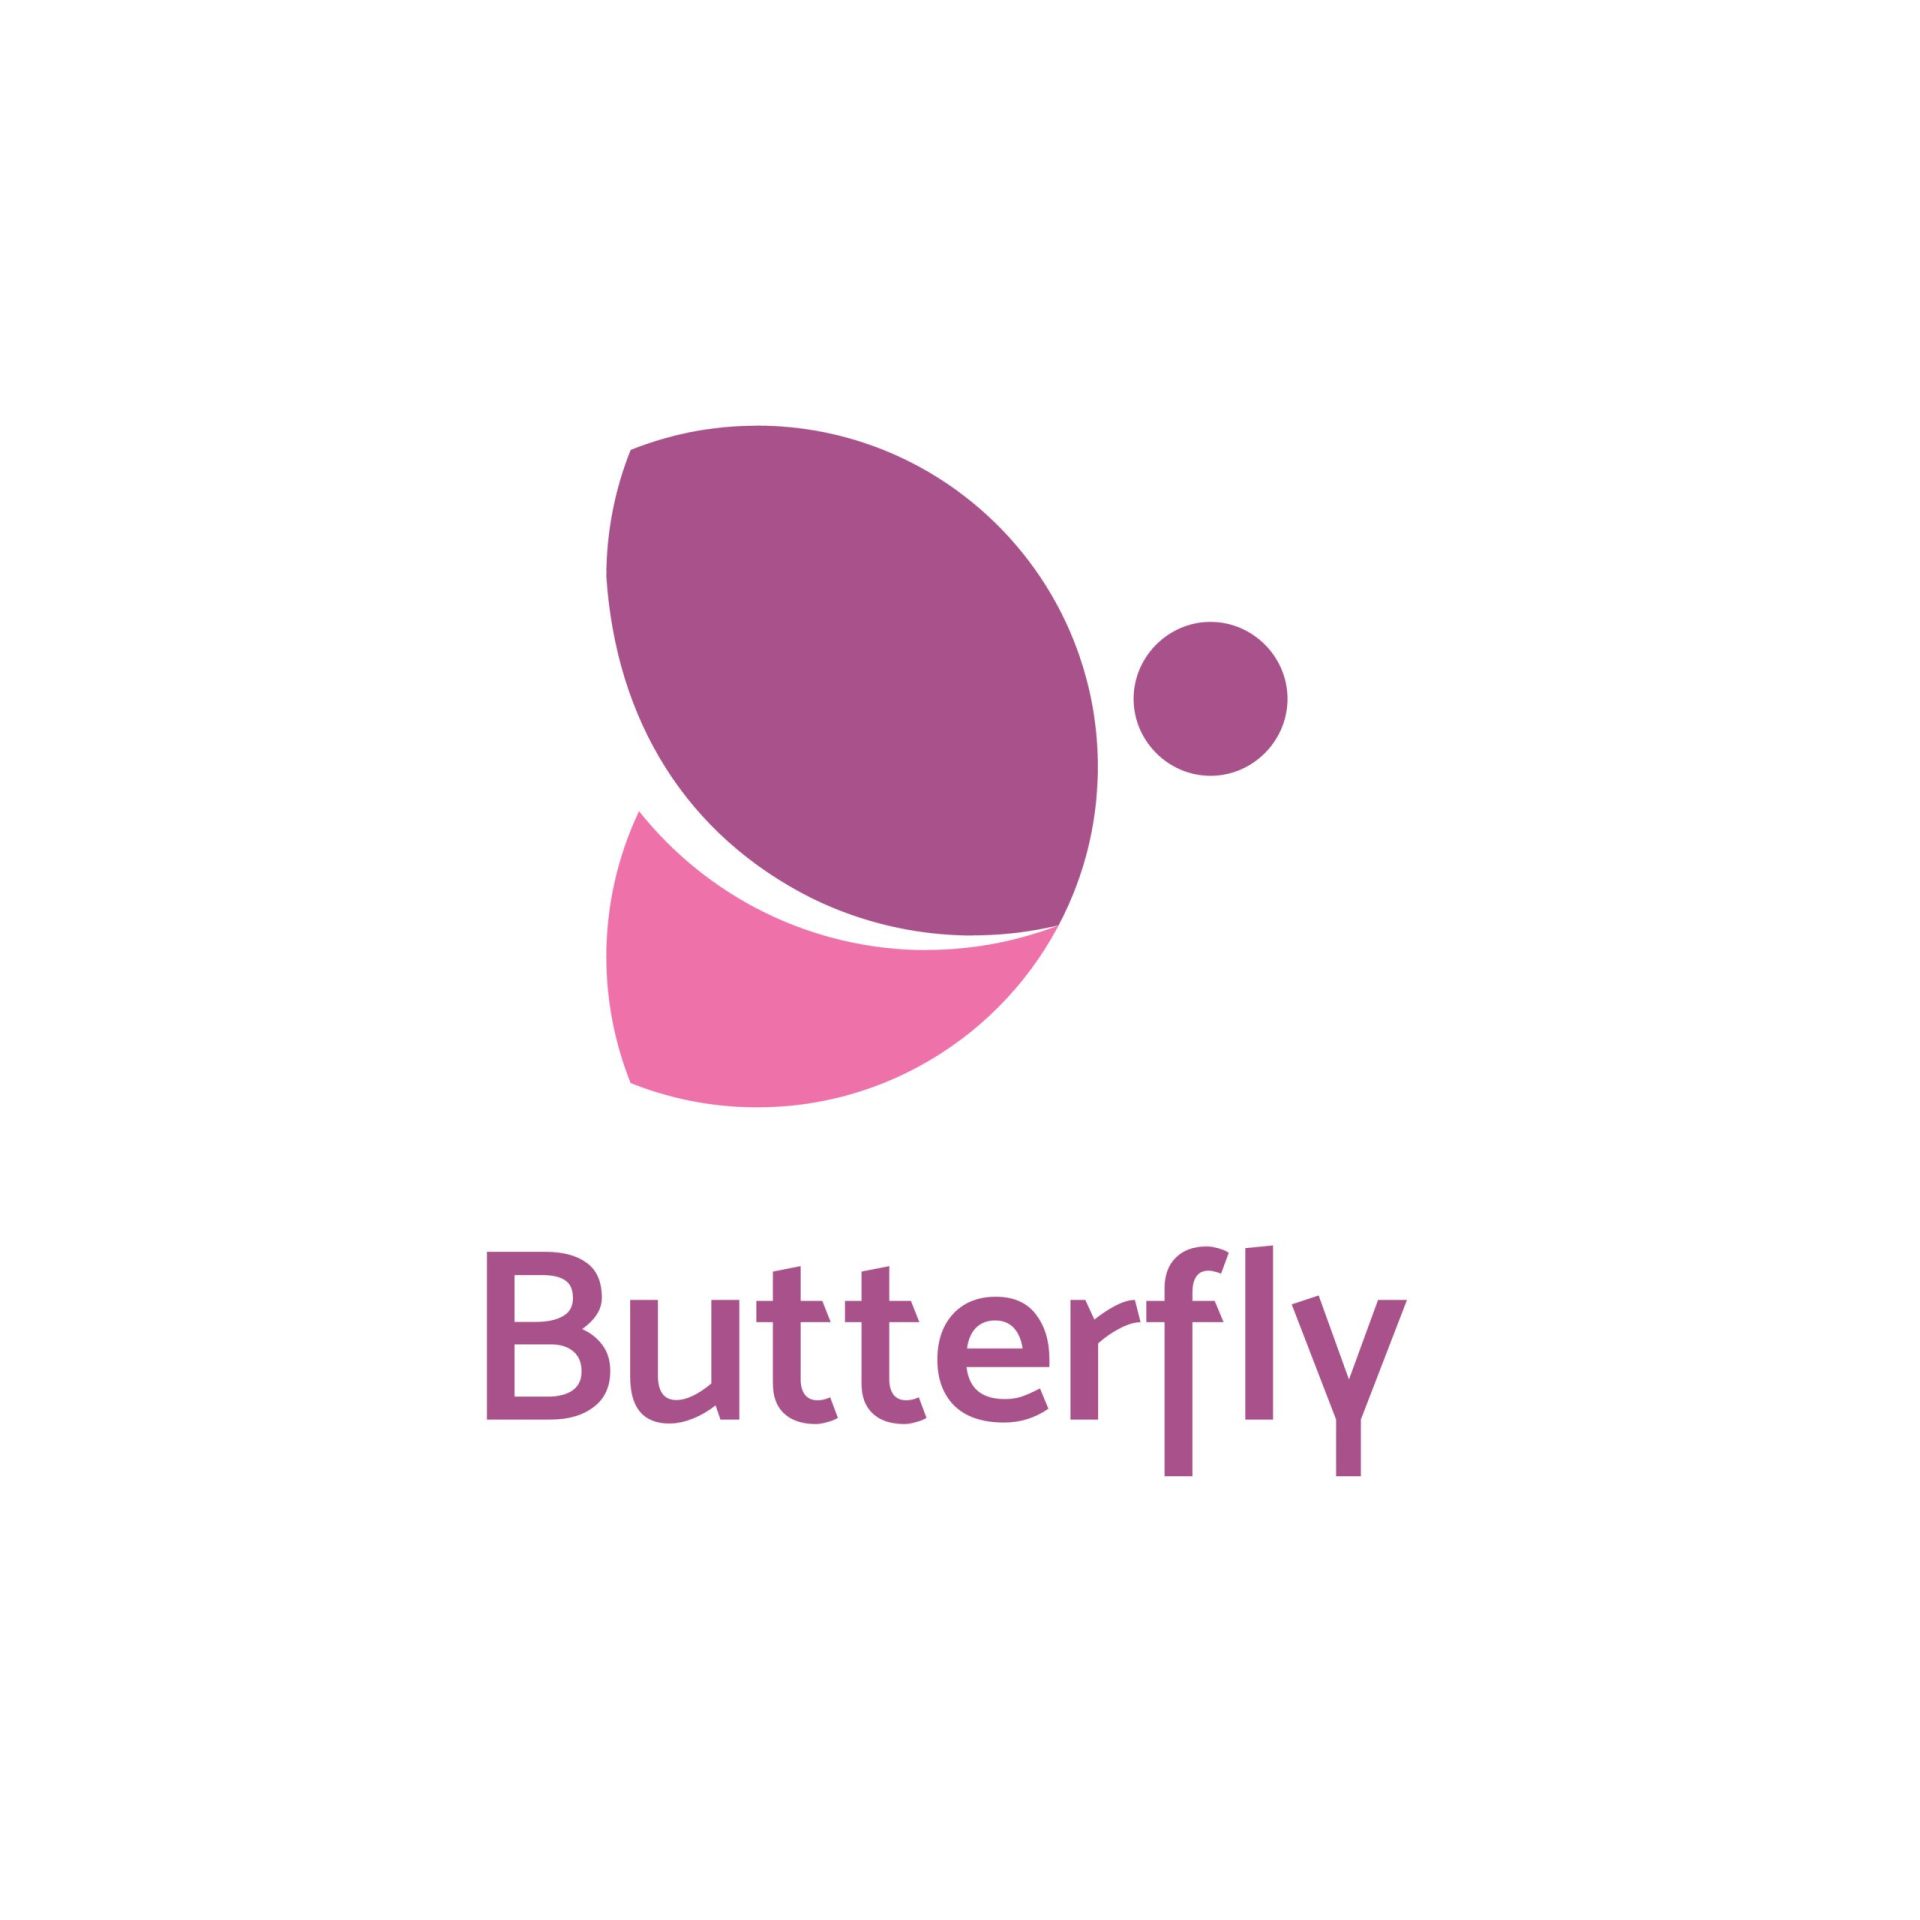 butterfly logo ideas 2